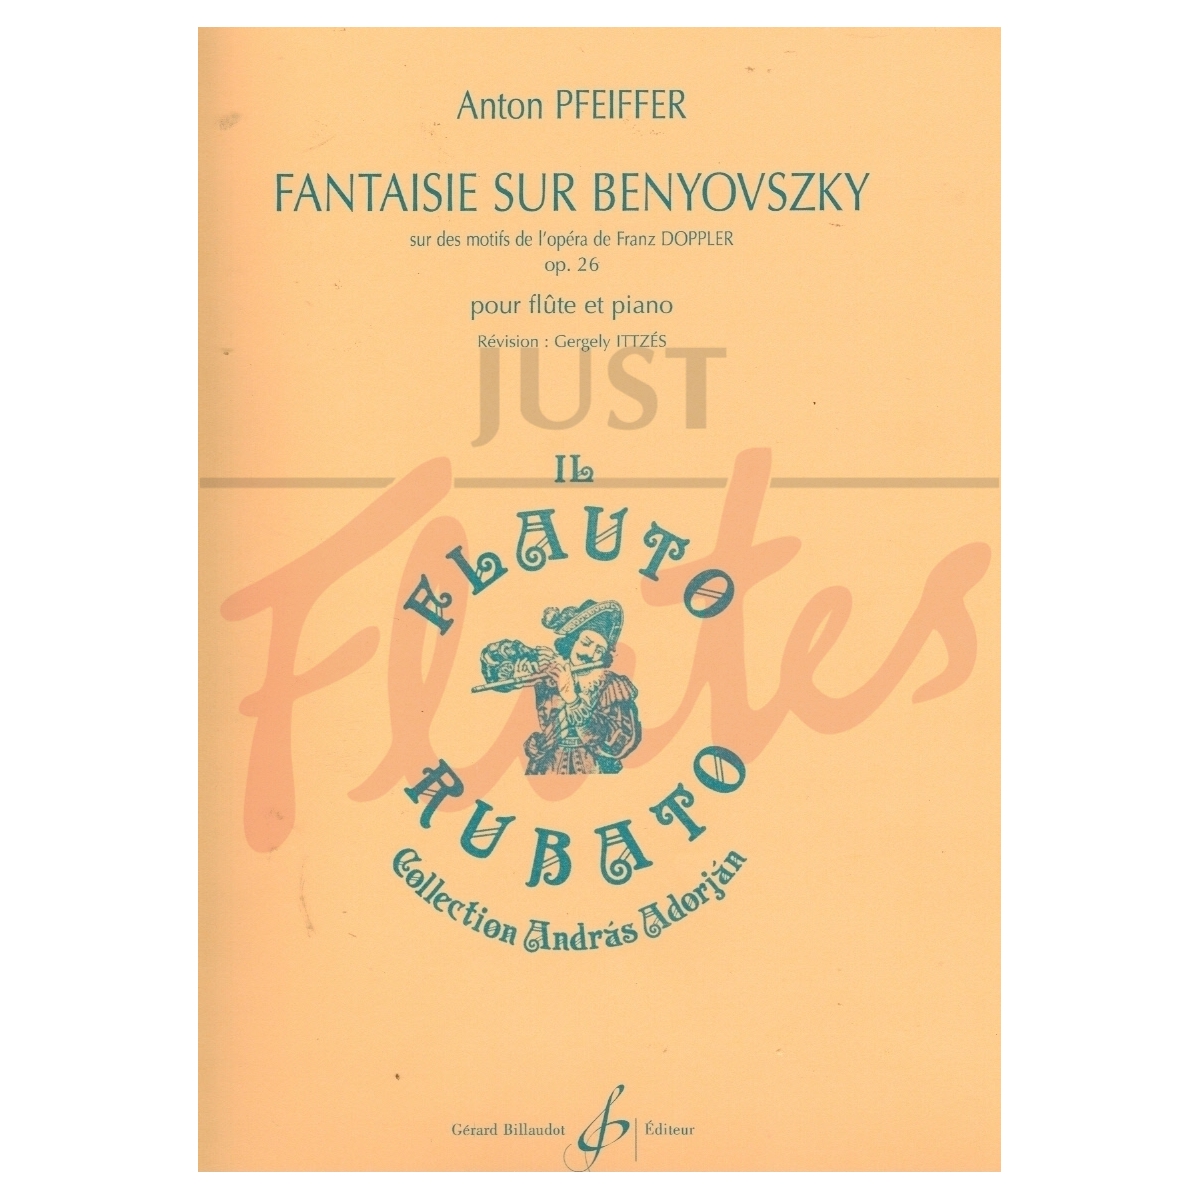 Fantaisie sur Benyovszky (Opera by Franz Doppler)